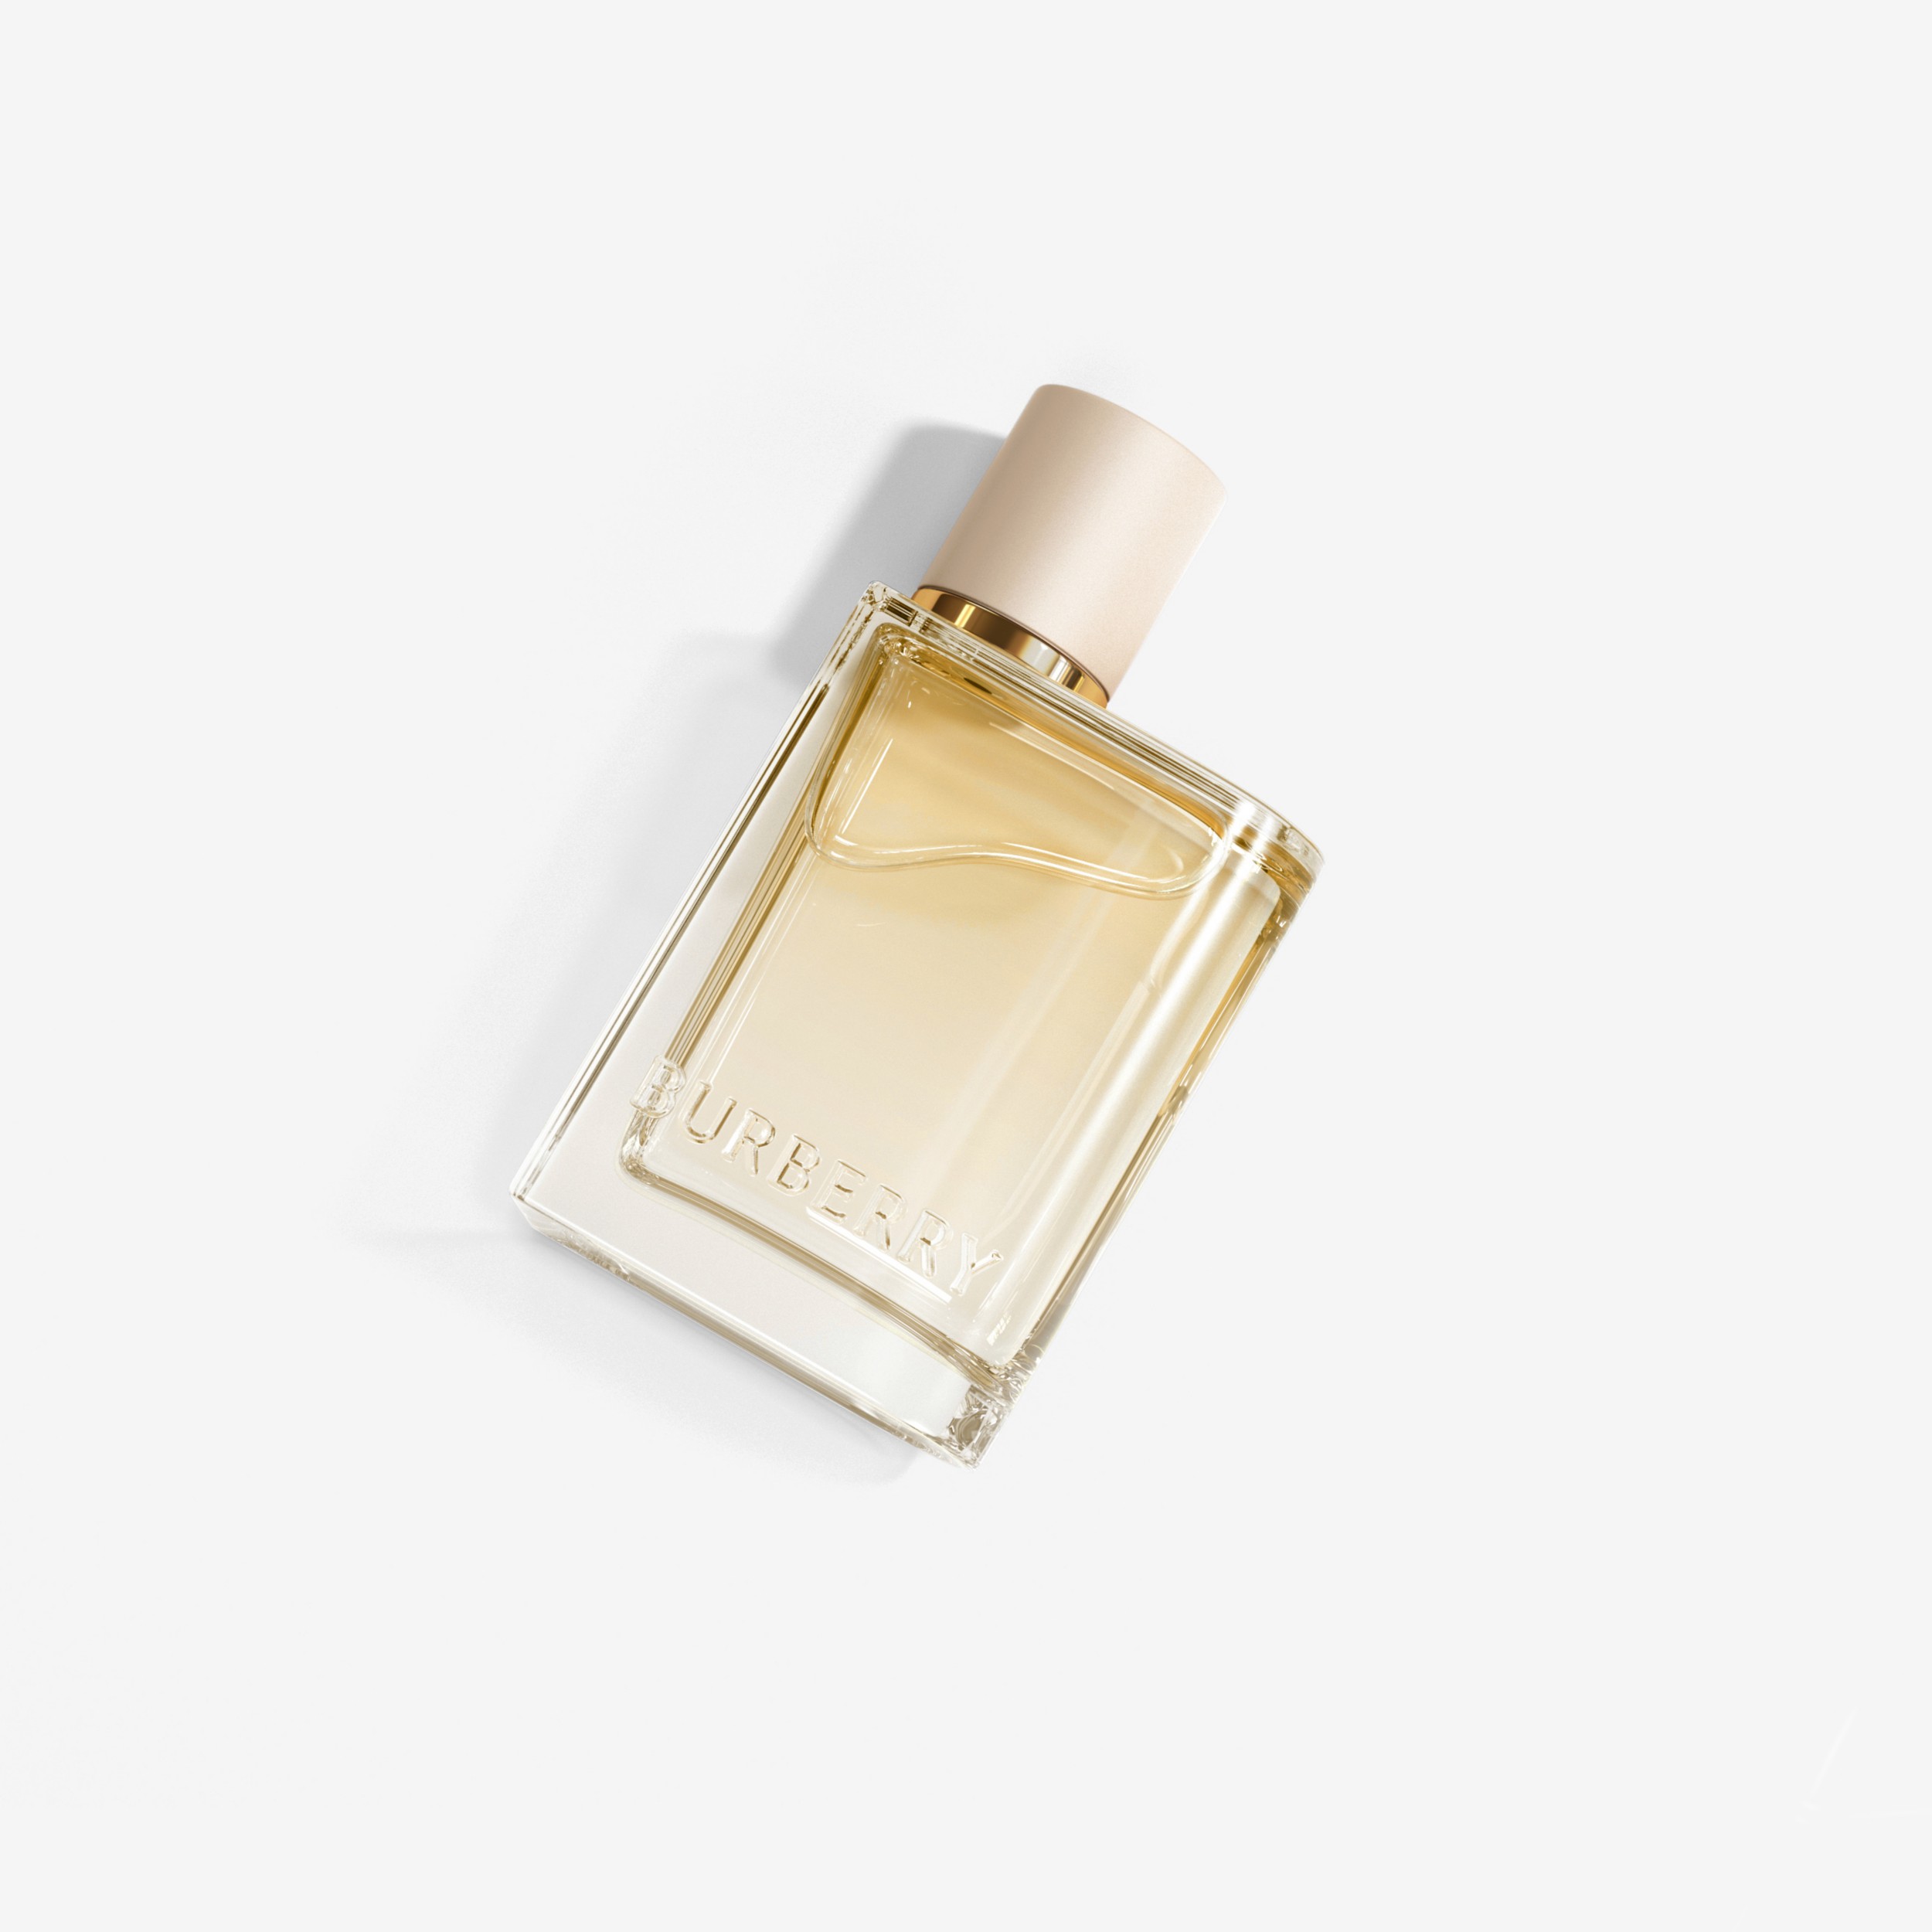 Nybegynder nyt år Hilsen Her London Dream Eau de Parfum 30ml - Women | Burberry® Official